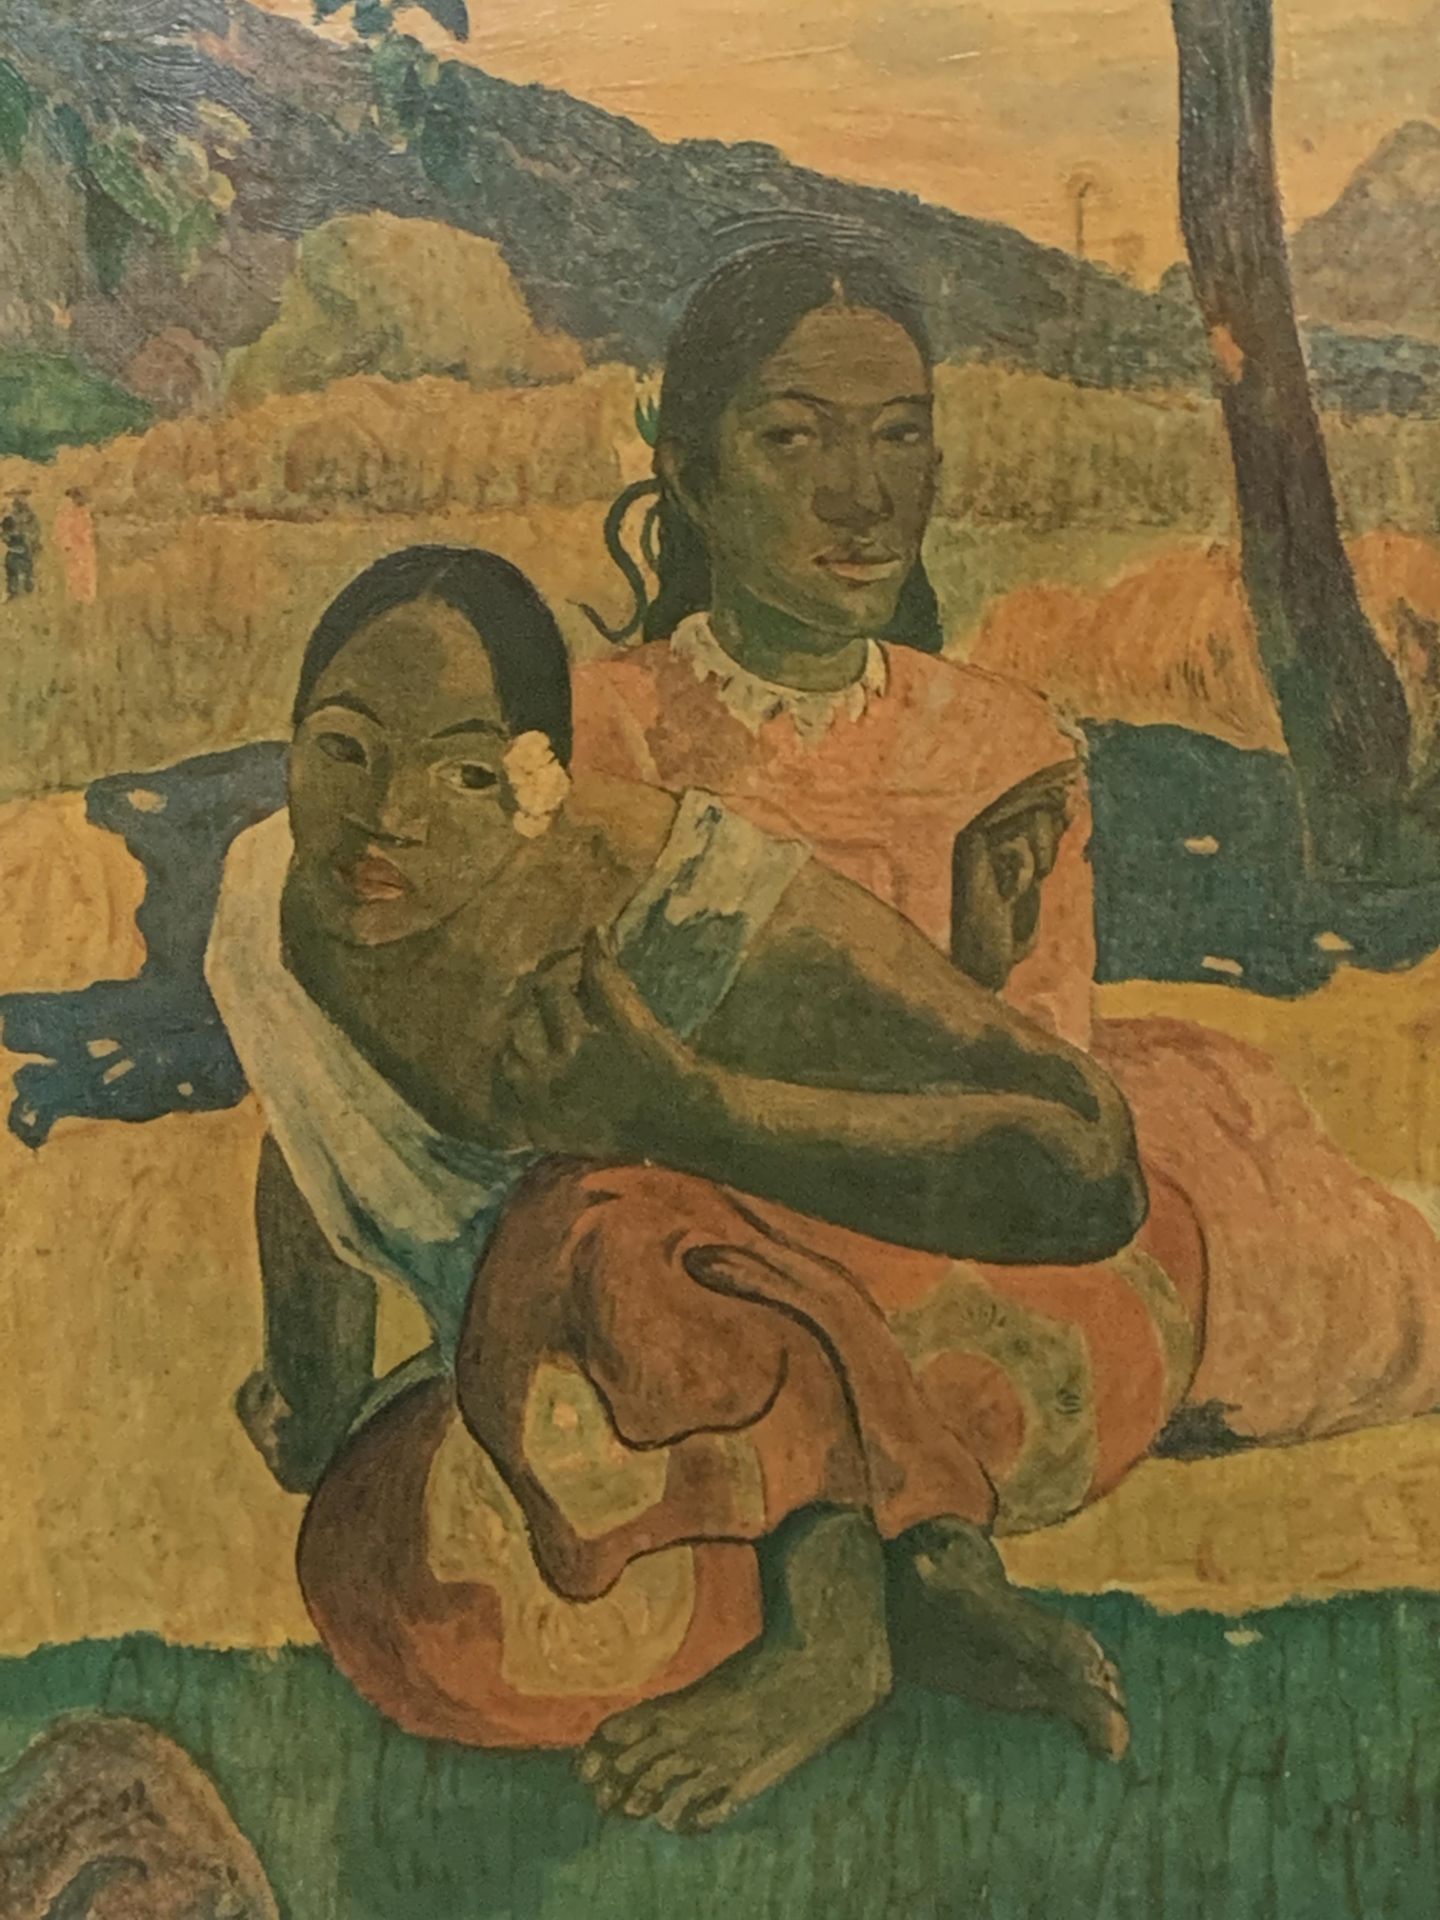 Framed oleograph after Paul Gauguin - Image 2 of 3